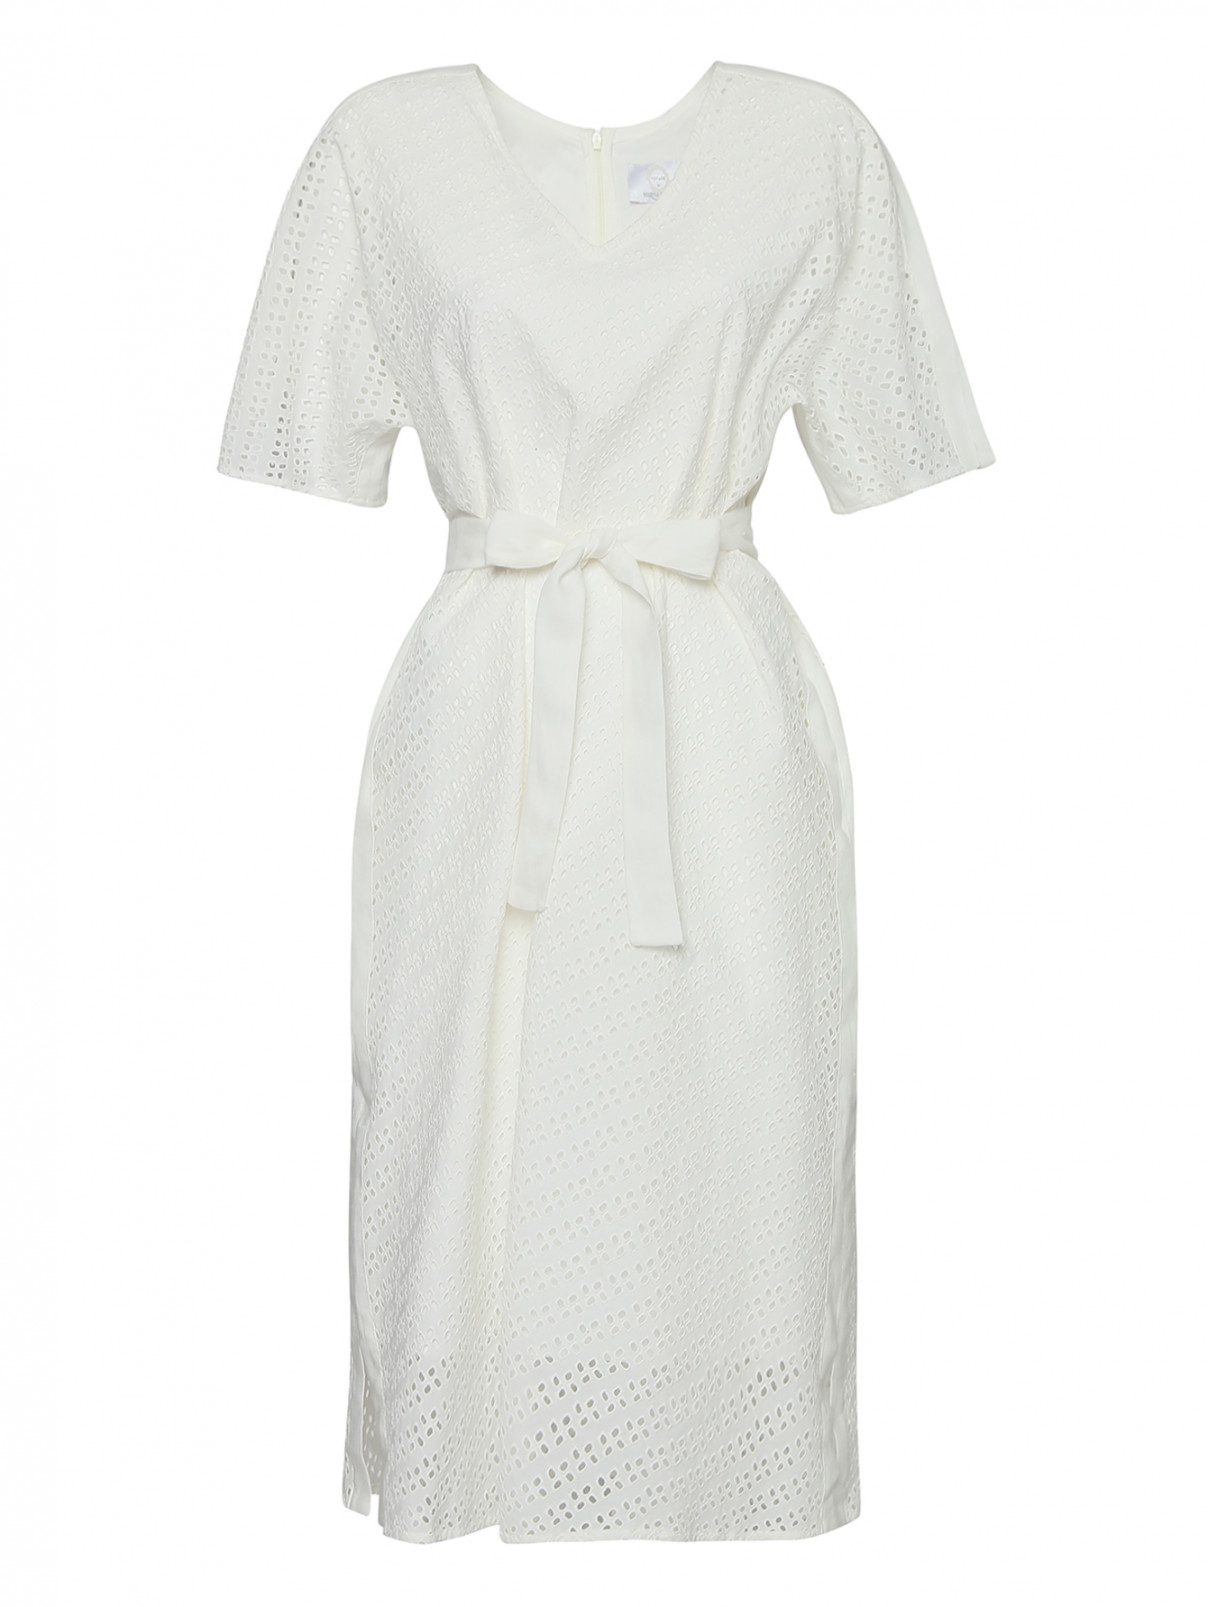 Платье хлопковое, с поясом Marina Rinaldi  –  Общий вид  – Цвет:  Белый